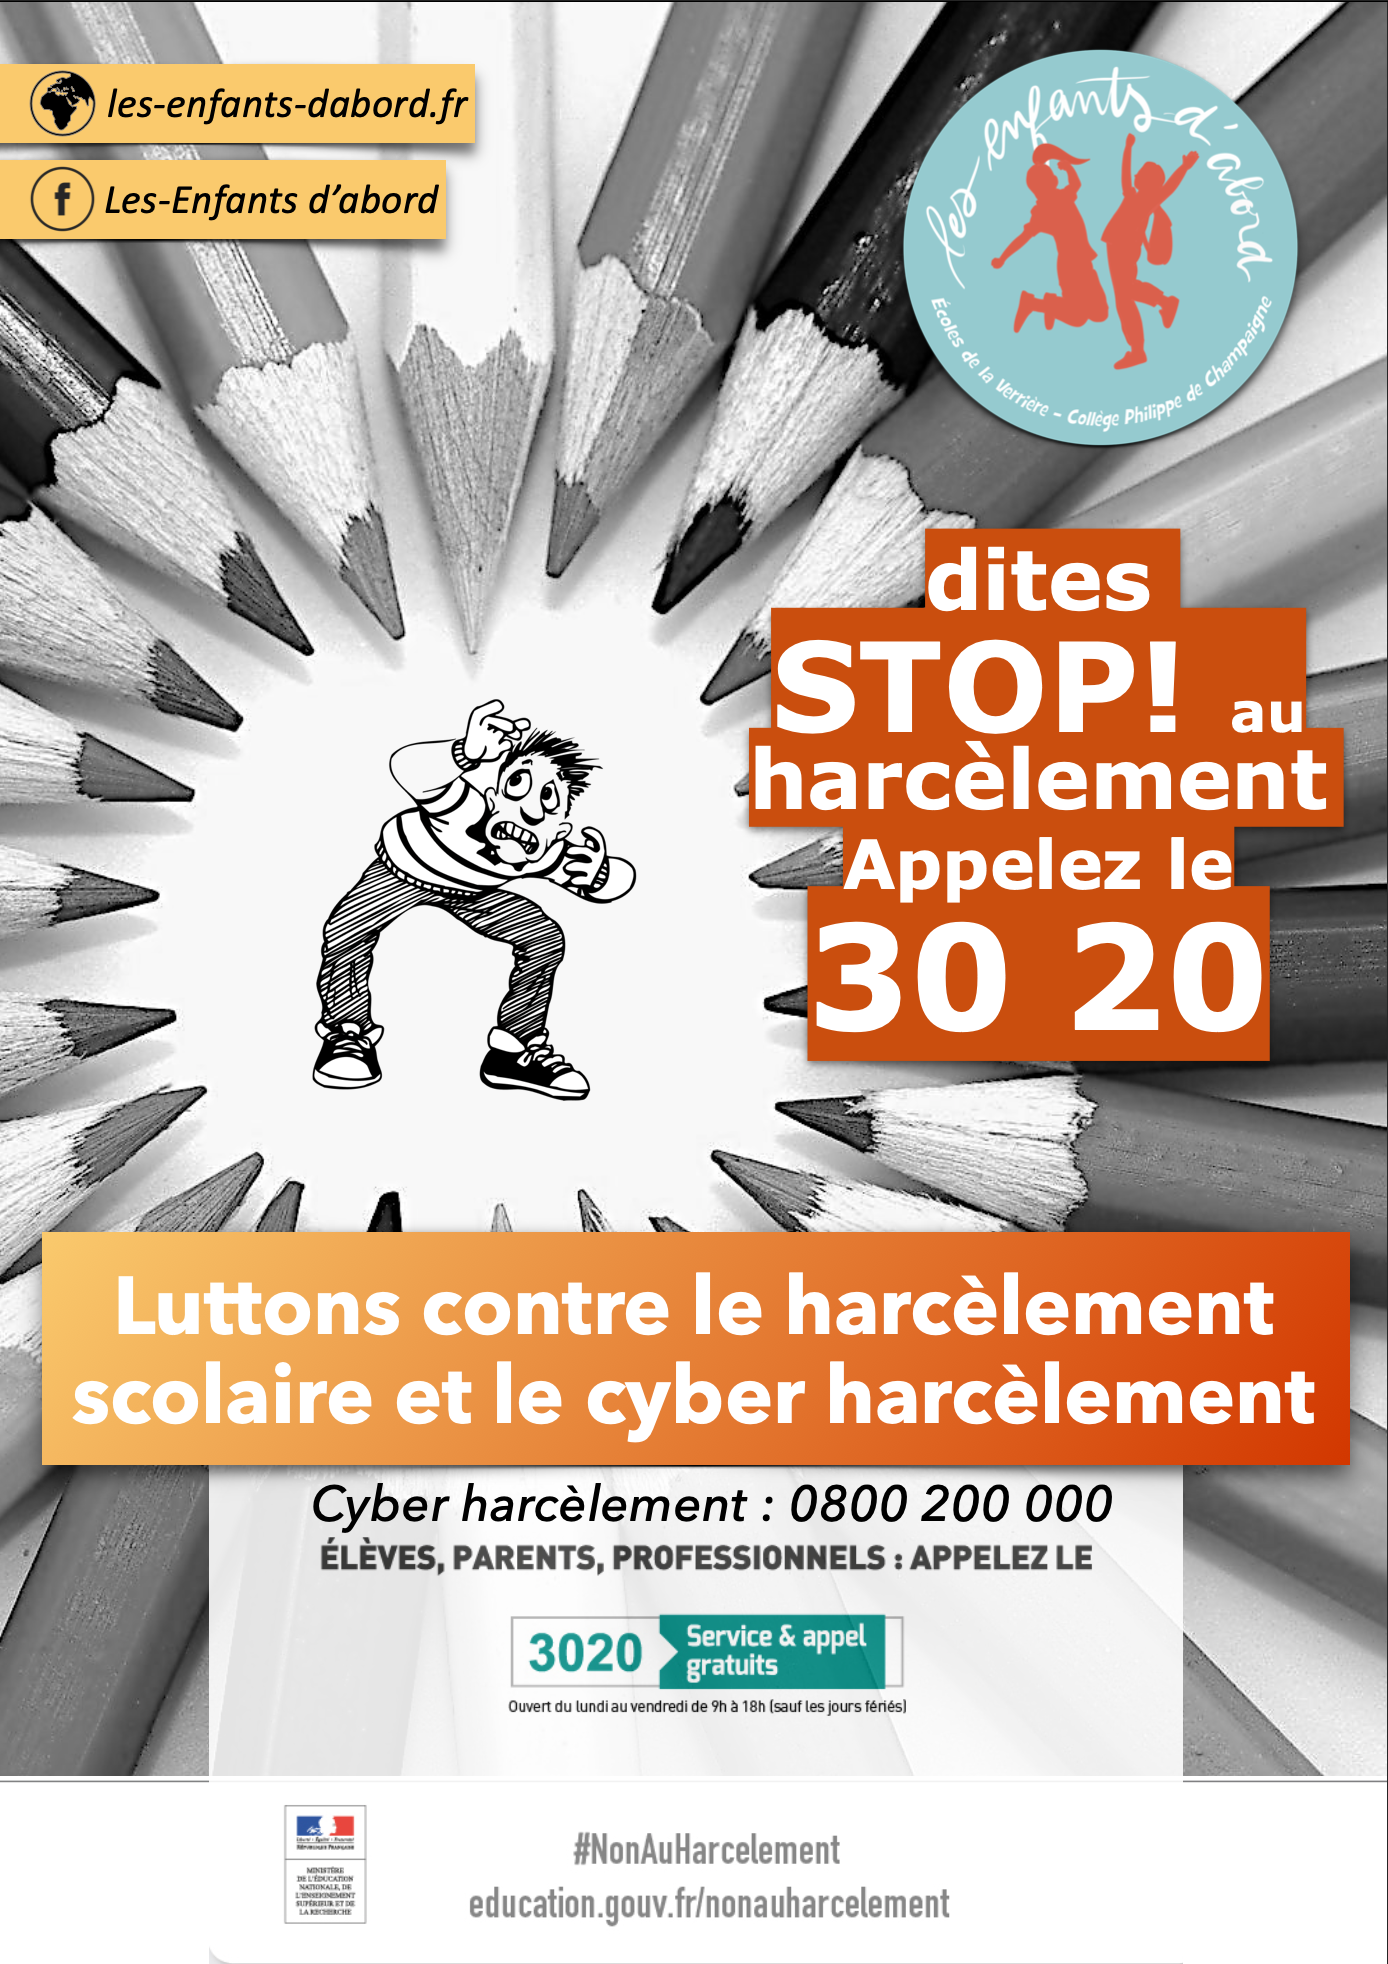 journée nationale de mobilisation contre le harcèlement et le #Cyberharcèlement scolaire